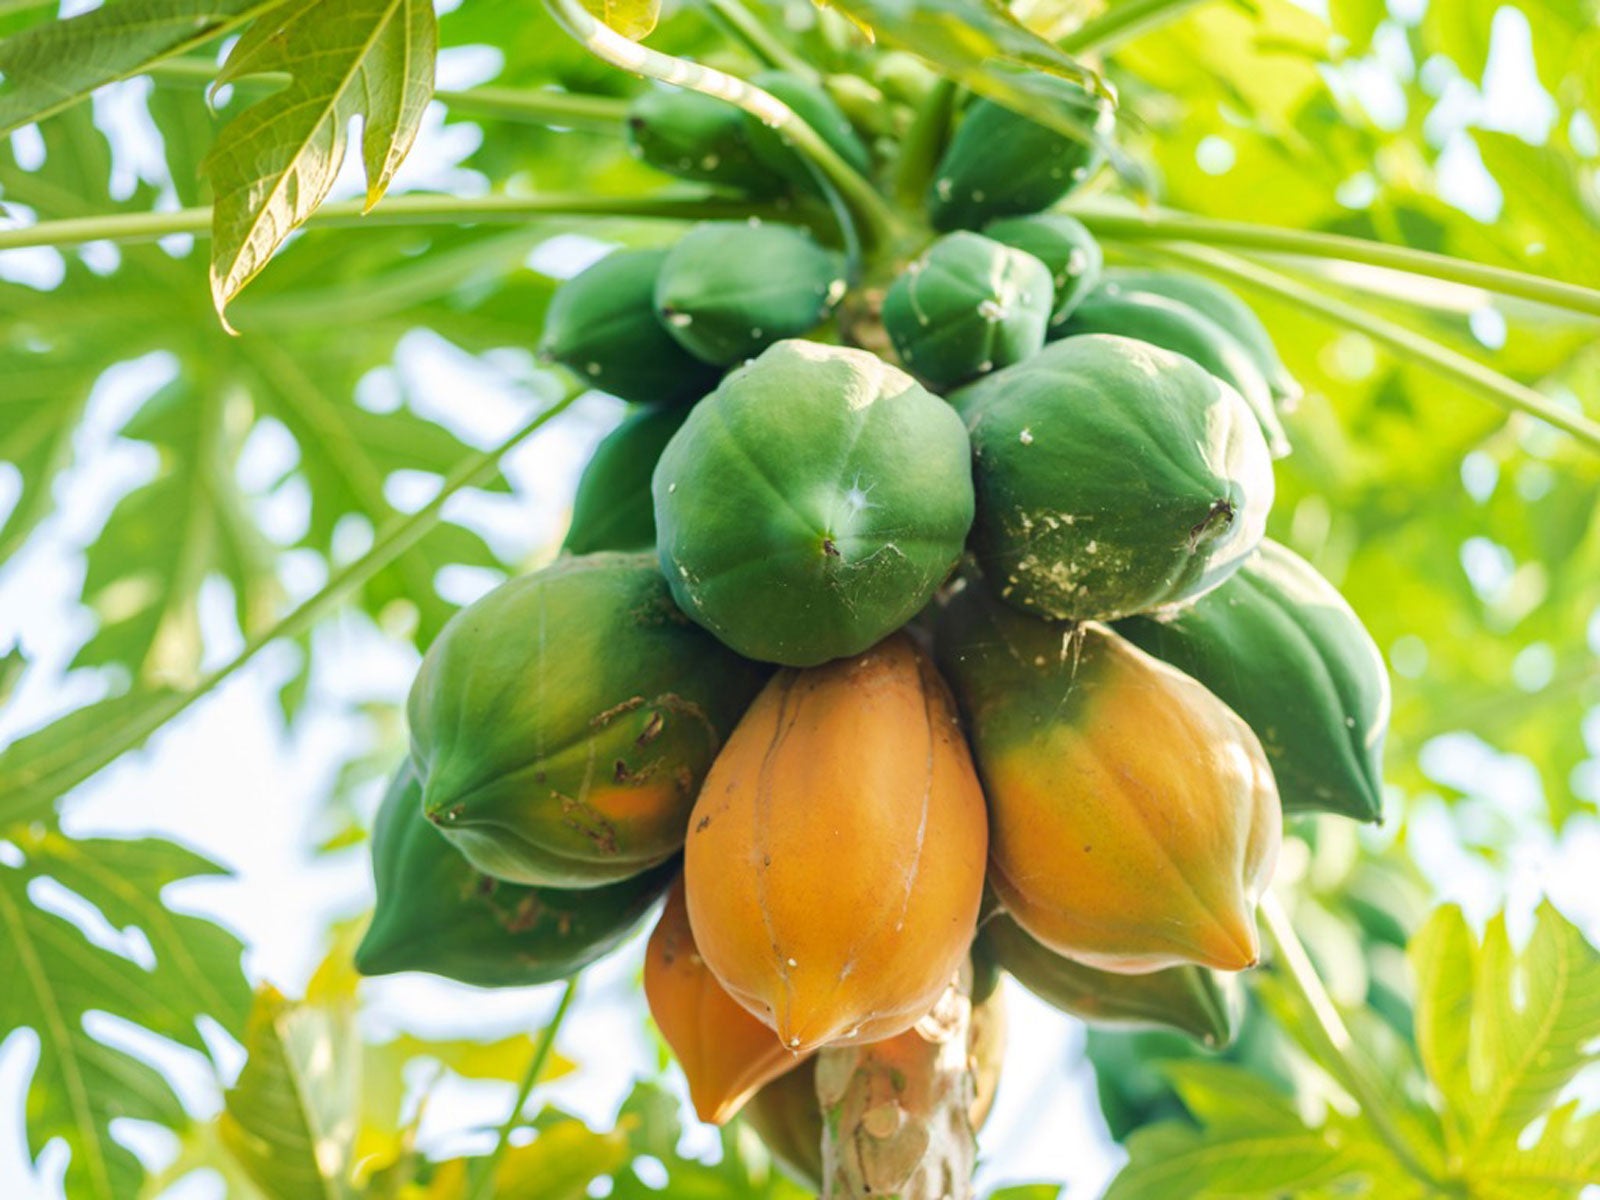 How To Harvest Papayas Papaya Harvesting Methods,20th Wedding Anniversary Ideas